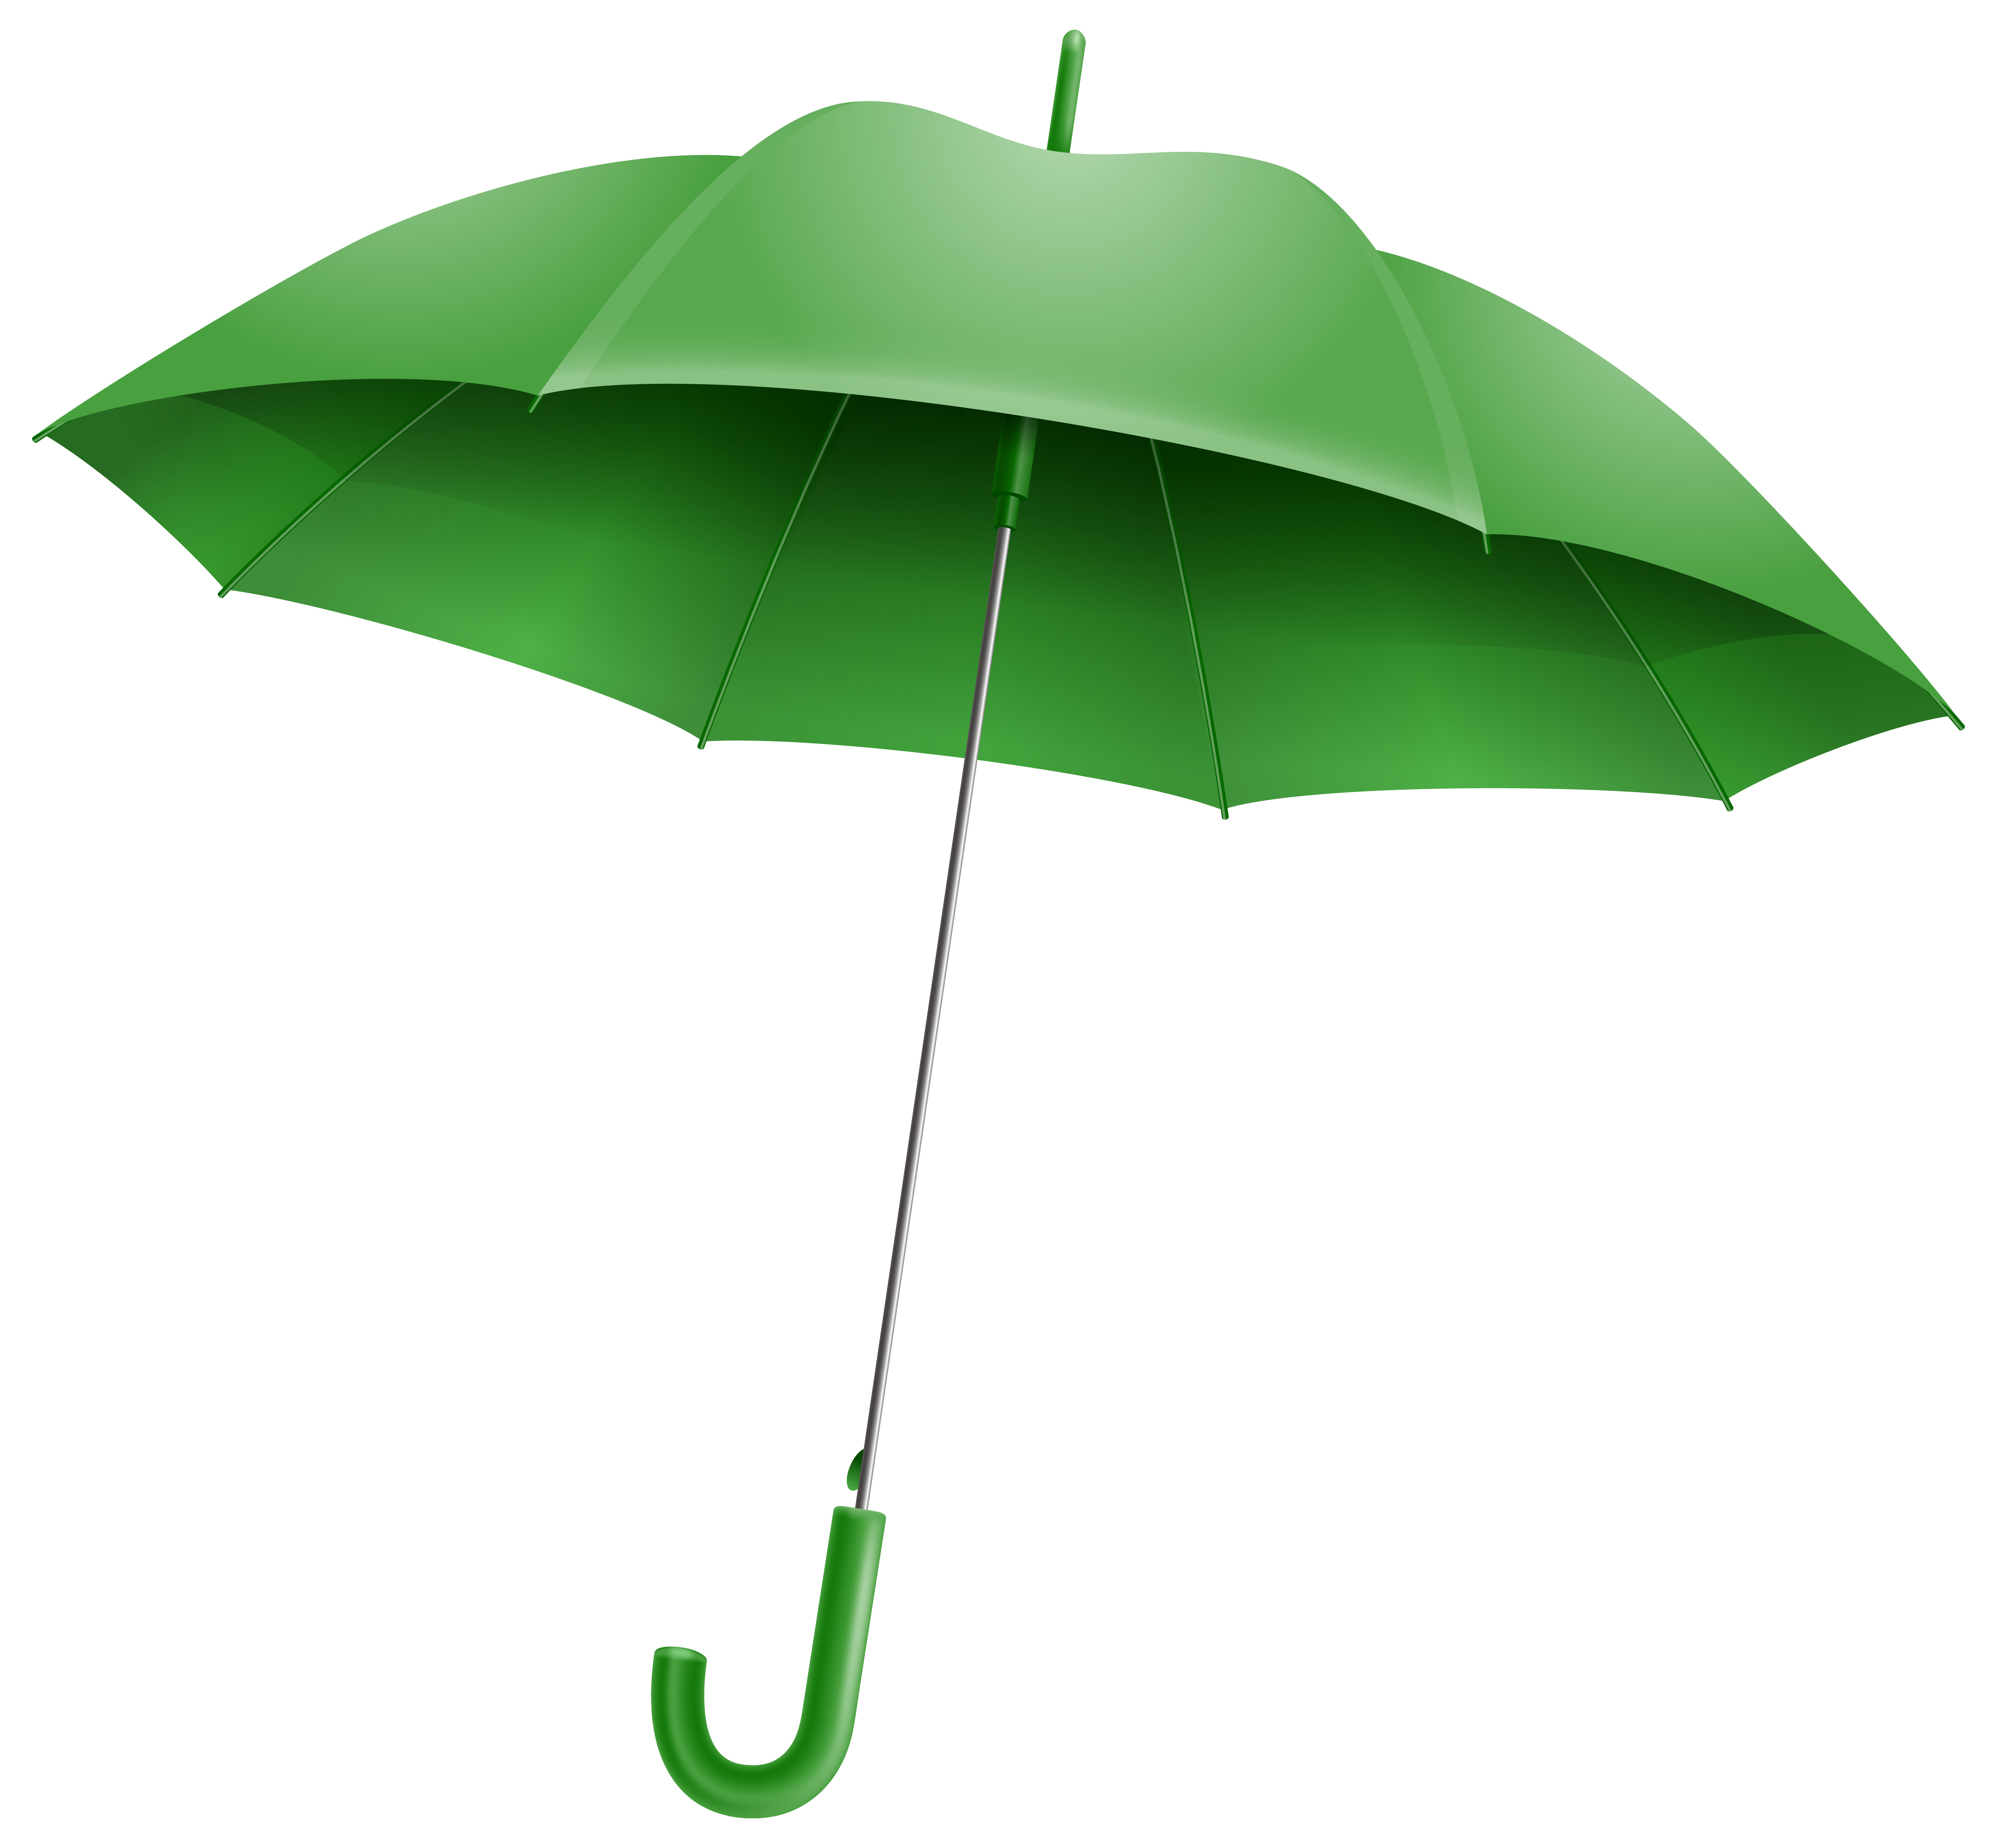 Green Umbrella PNG Clipart Image